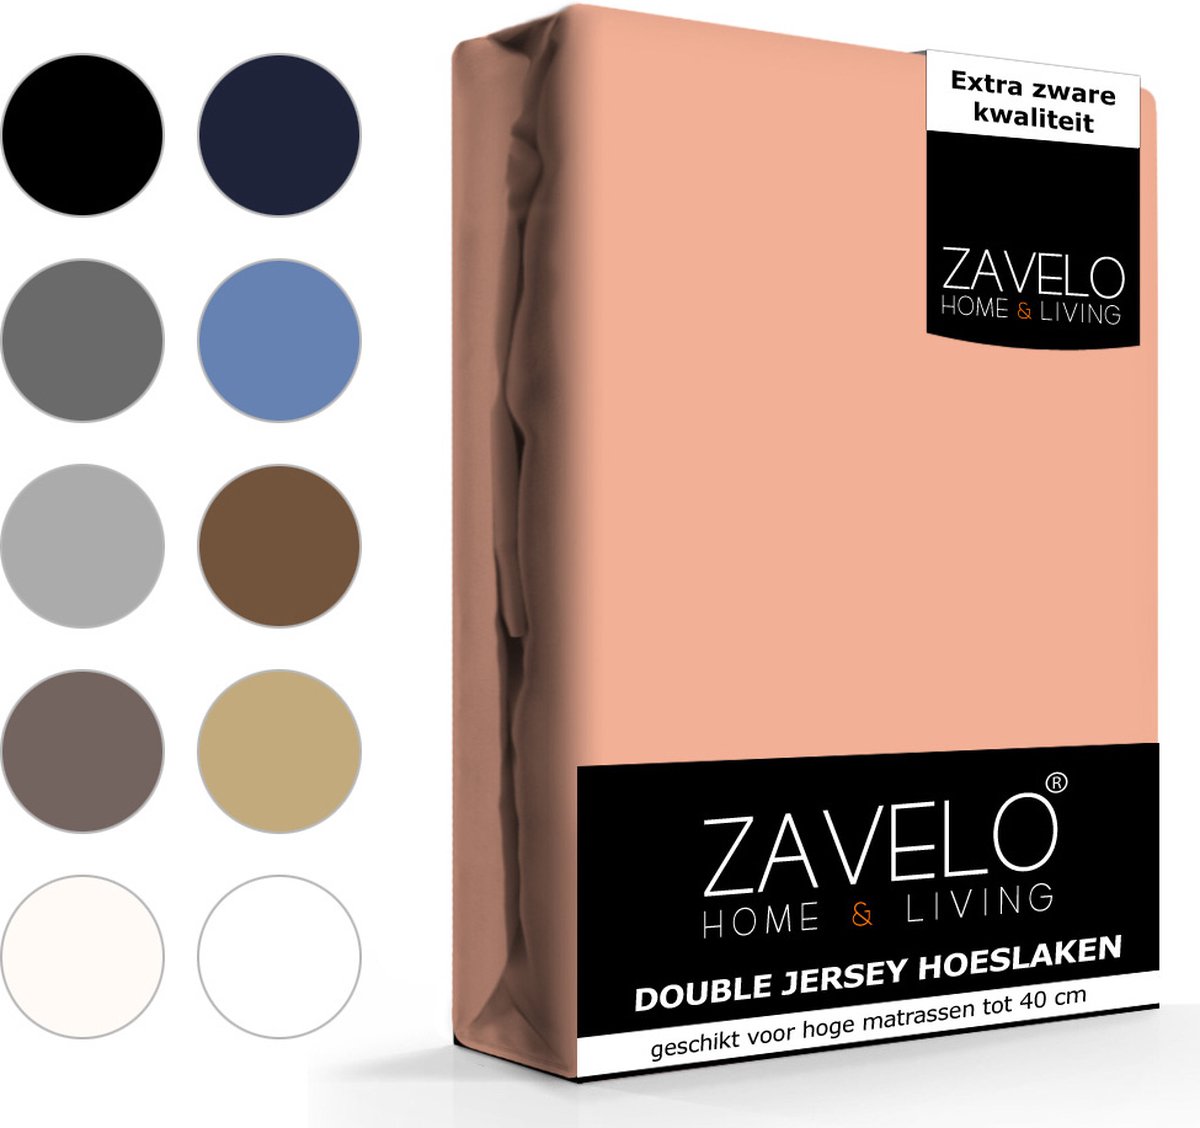 Slaaptextiel Zavelo Double Jersey Hoeslaken Perzik-1-persoons (90x200 Cm) - Roze